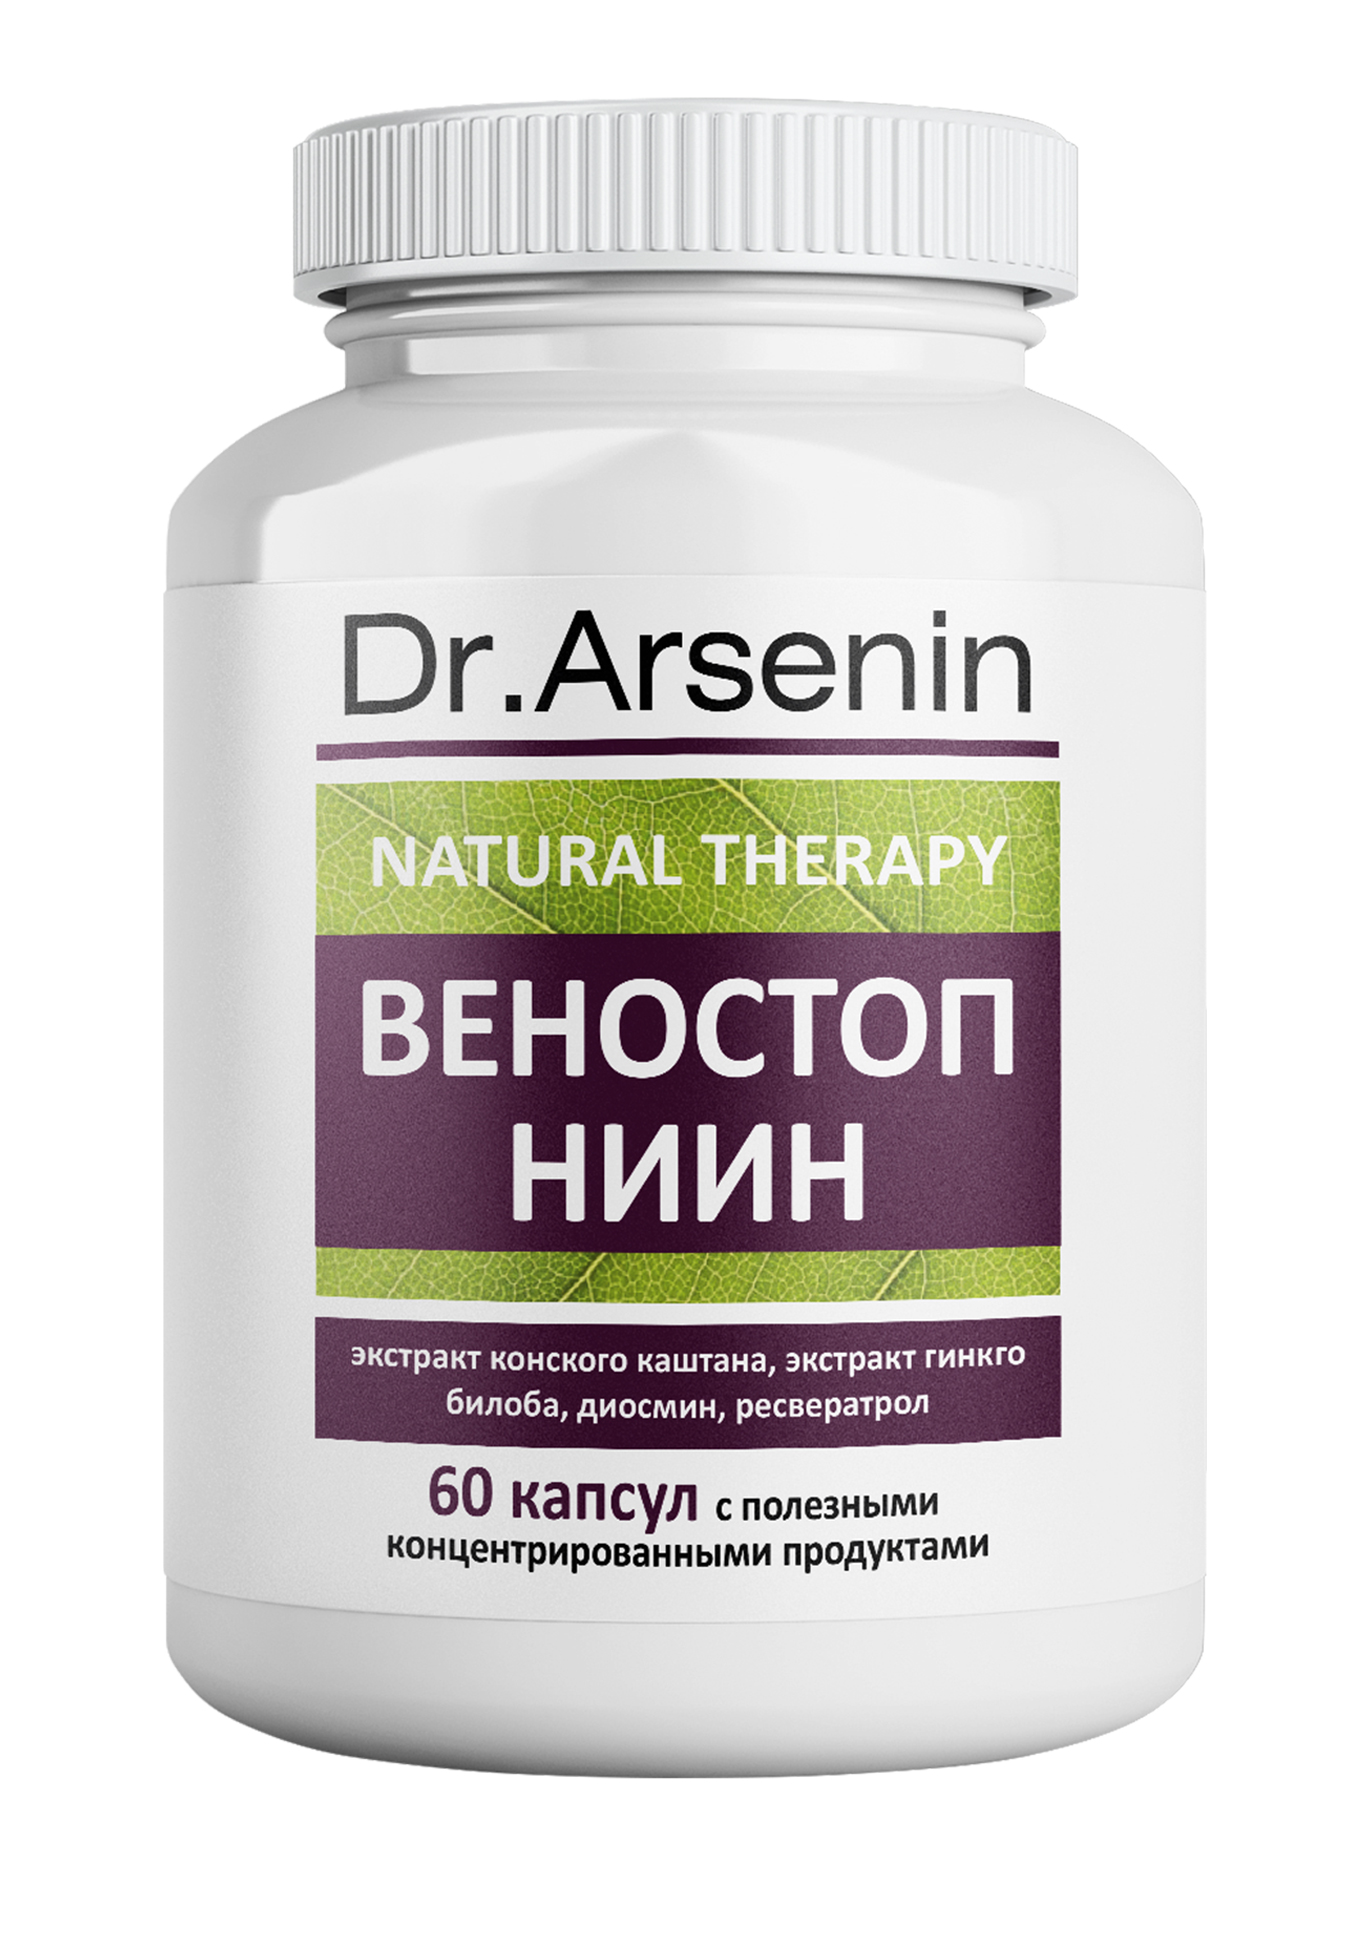 Dr. Arsenin. ВЕНОСТОП НИИН dr arsenin концентрированный пищевой продукт стройность